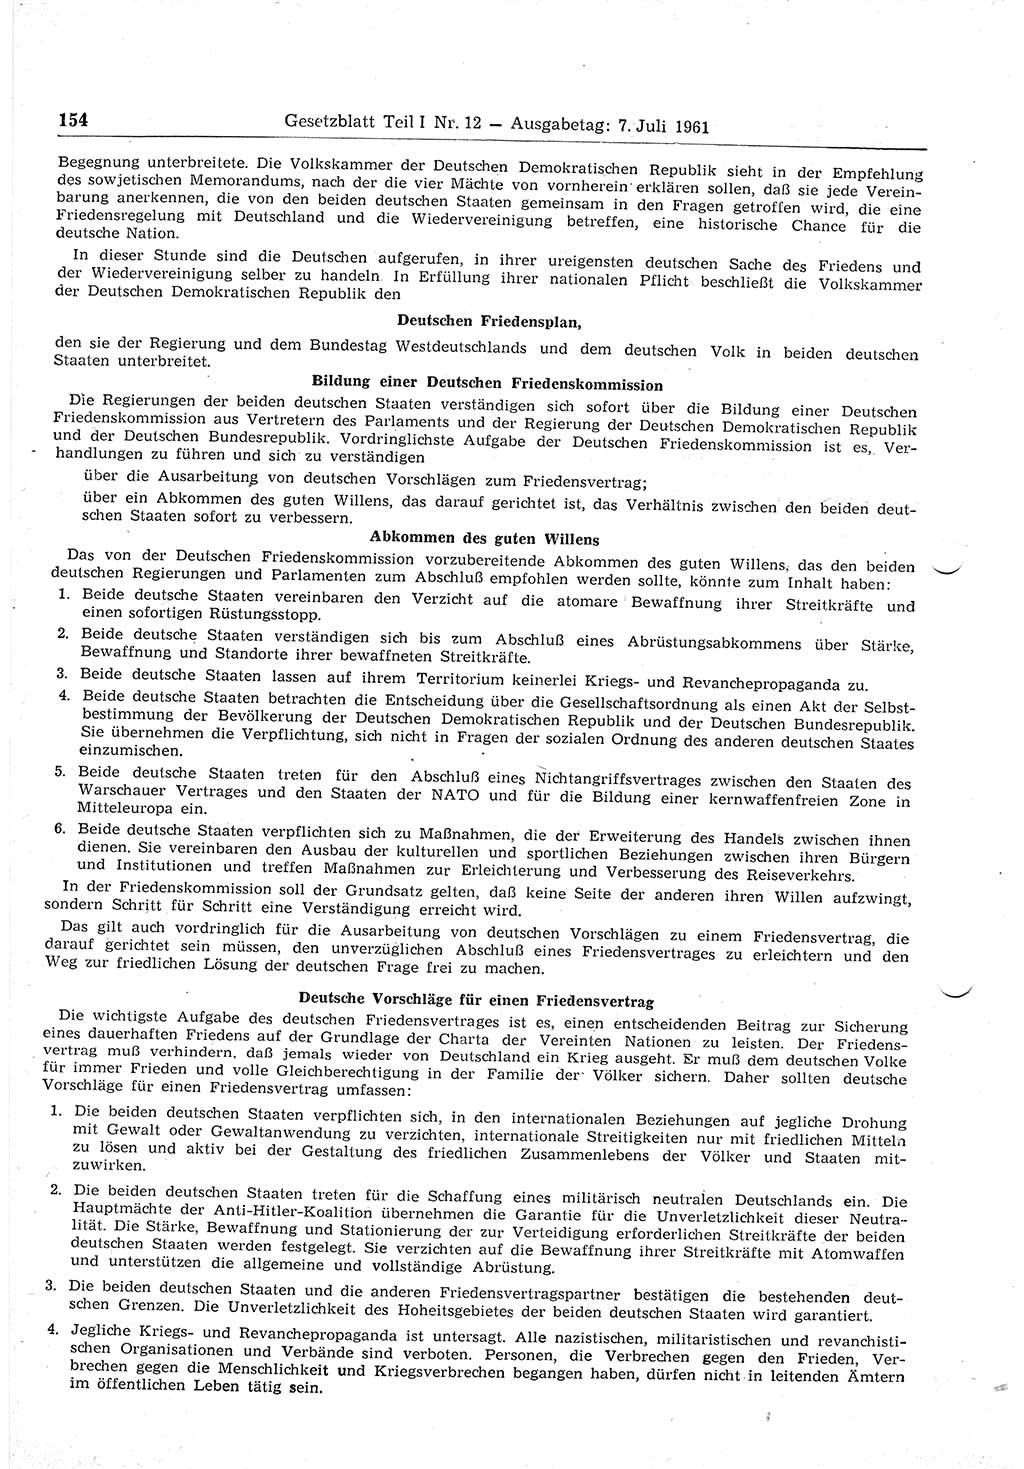 Gesetzblatt (GBl.) der Deutschen Demokratischen Republik (DDR) Teil Ⅰ 1961, Seite 154 (GBl. DDR Ⅰ 1961, S. 154)